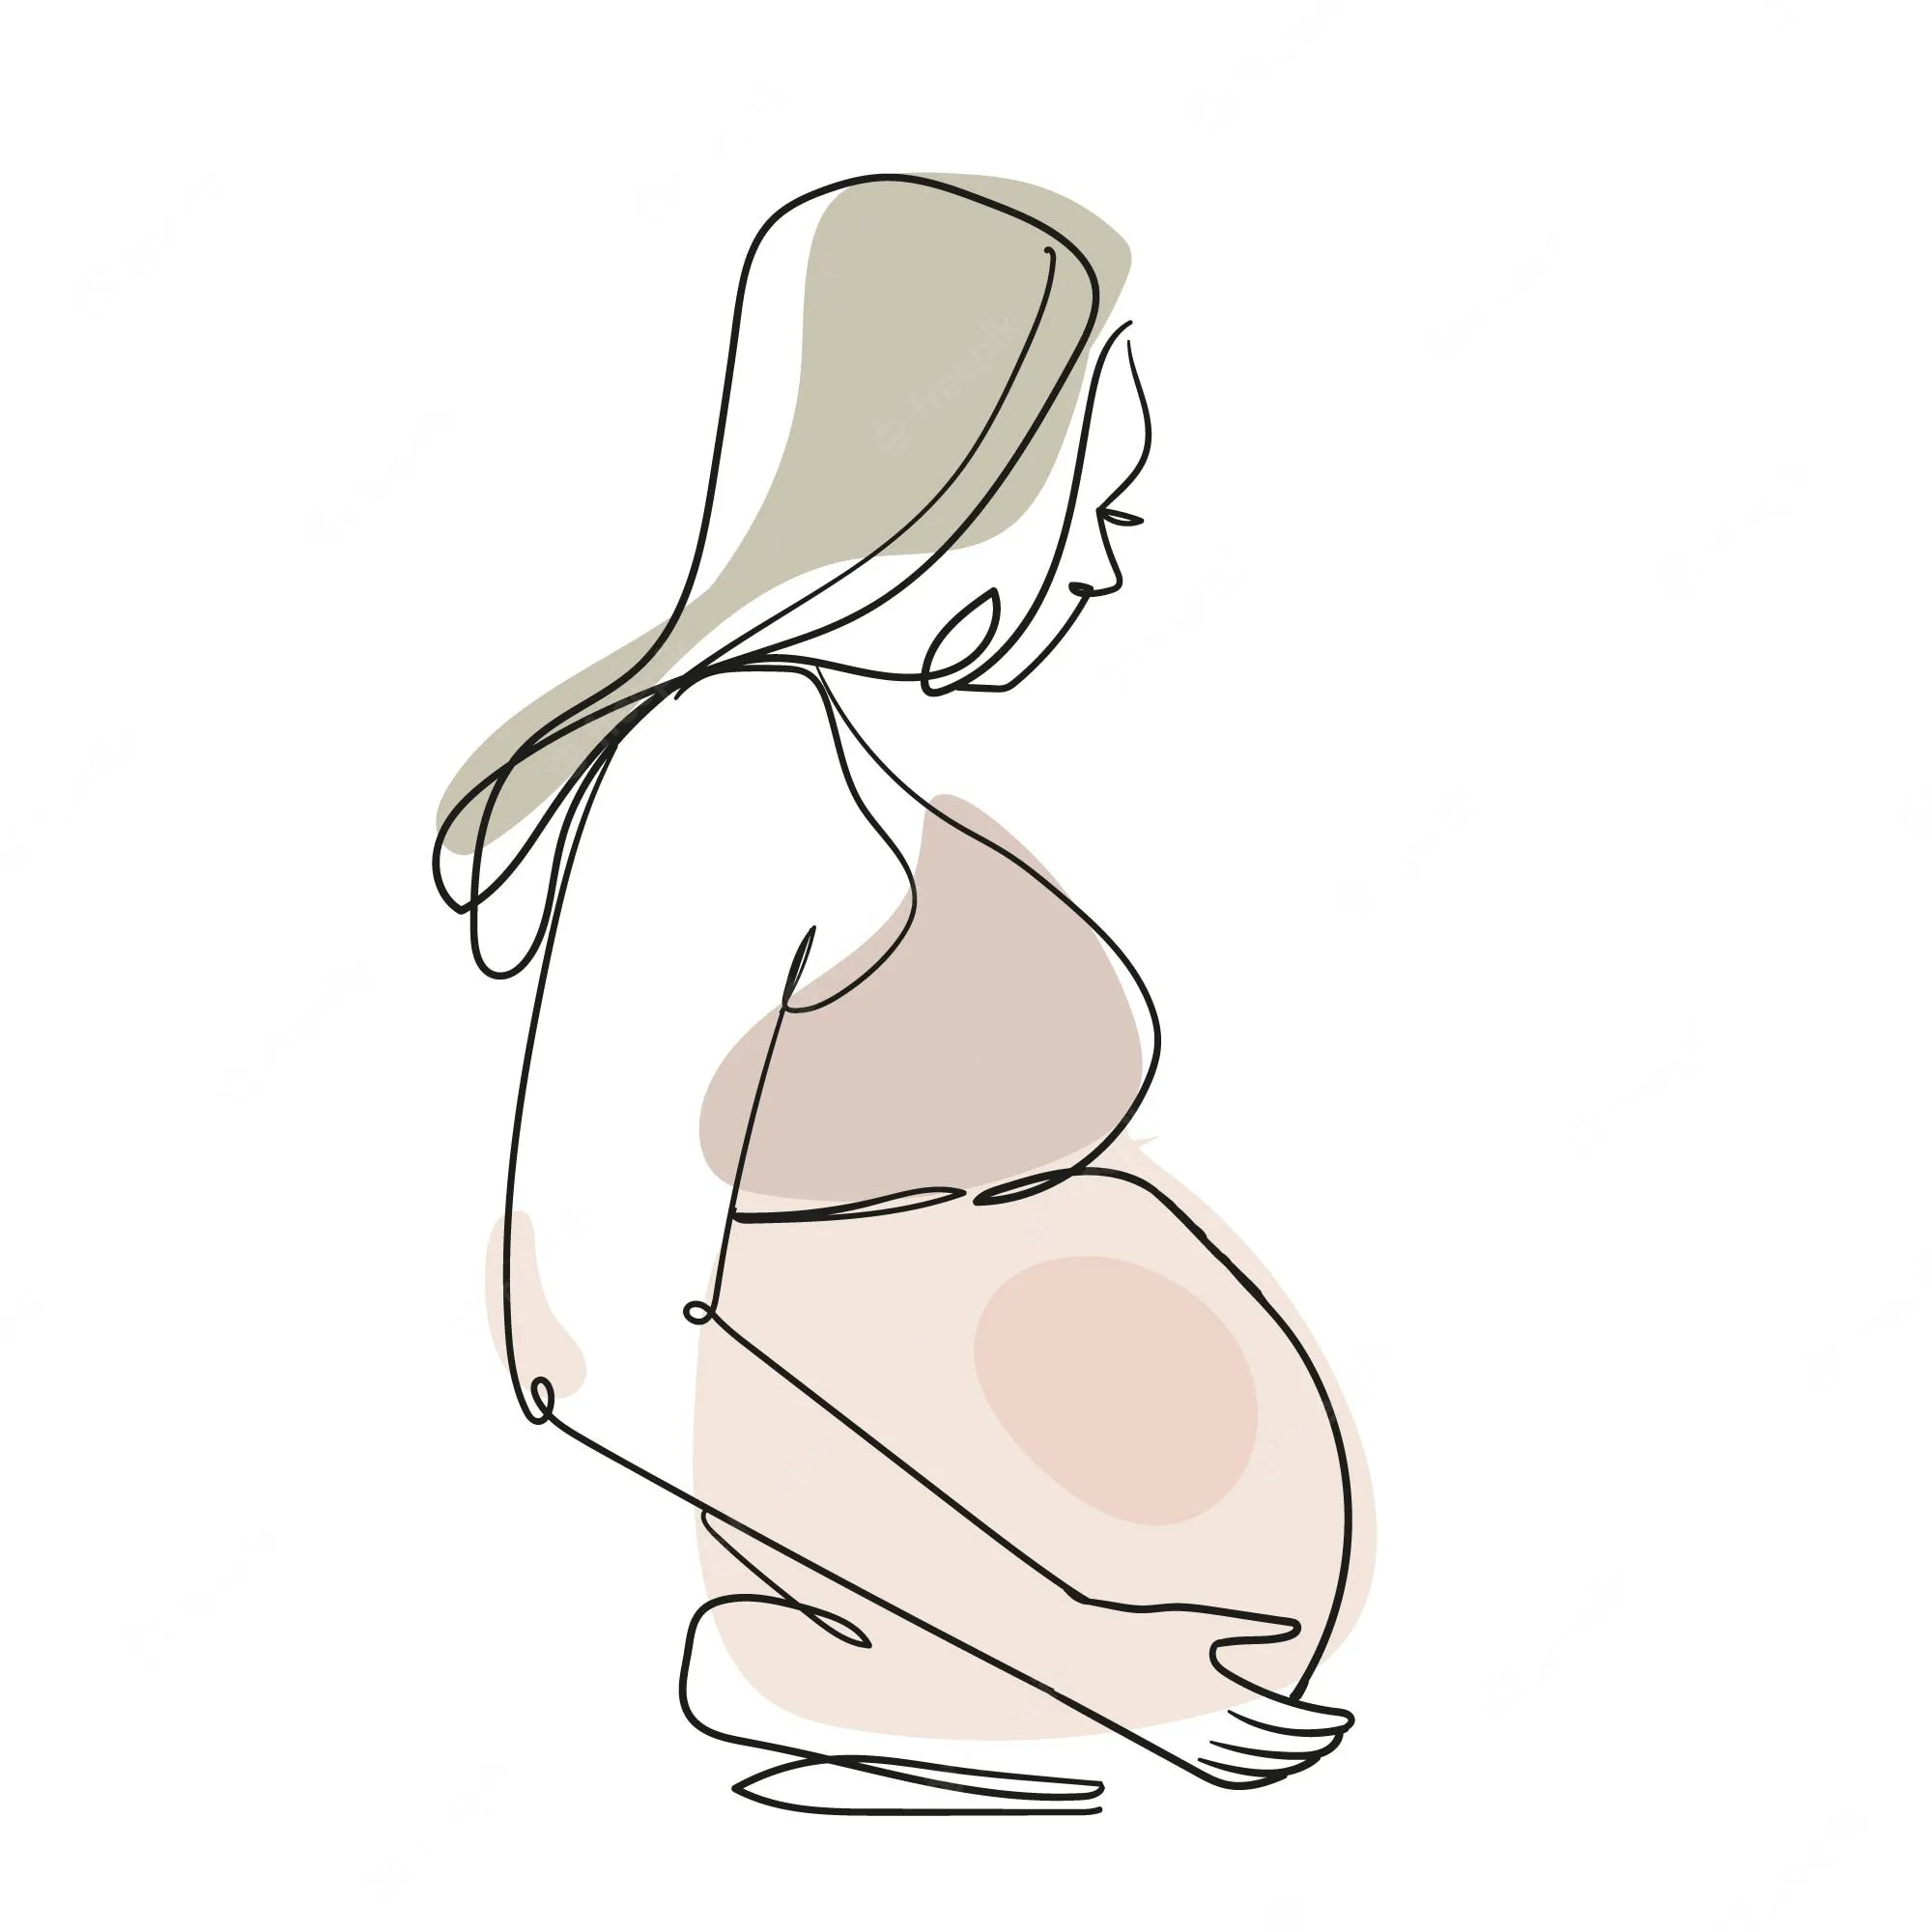 Imágenes de Mujer Embarazada Dibujo - Descarga gratuita en Freepik